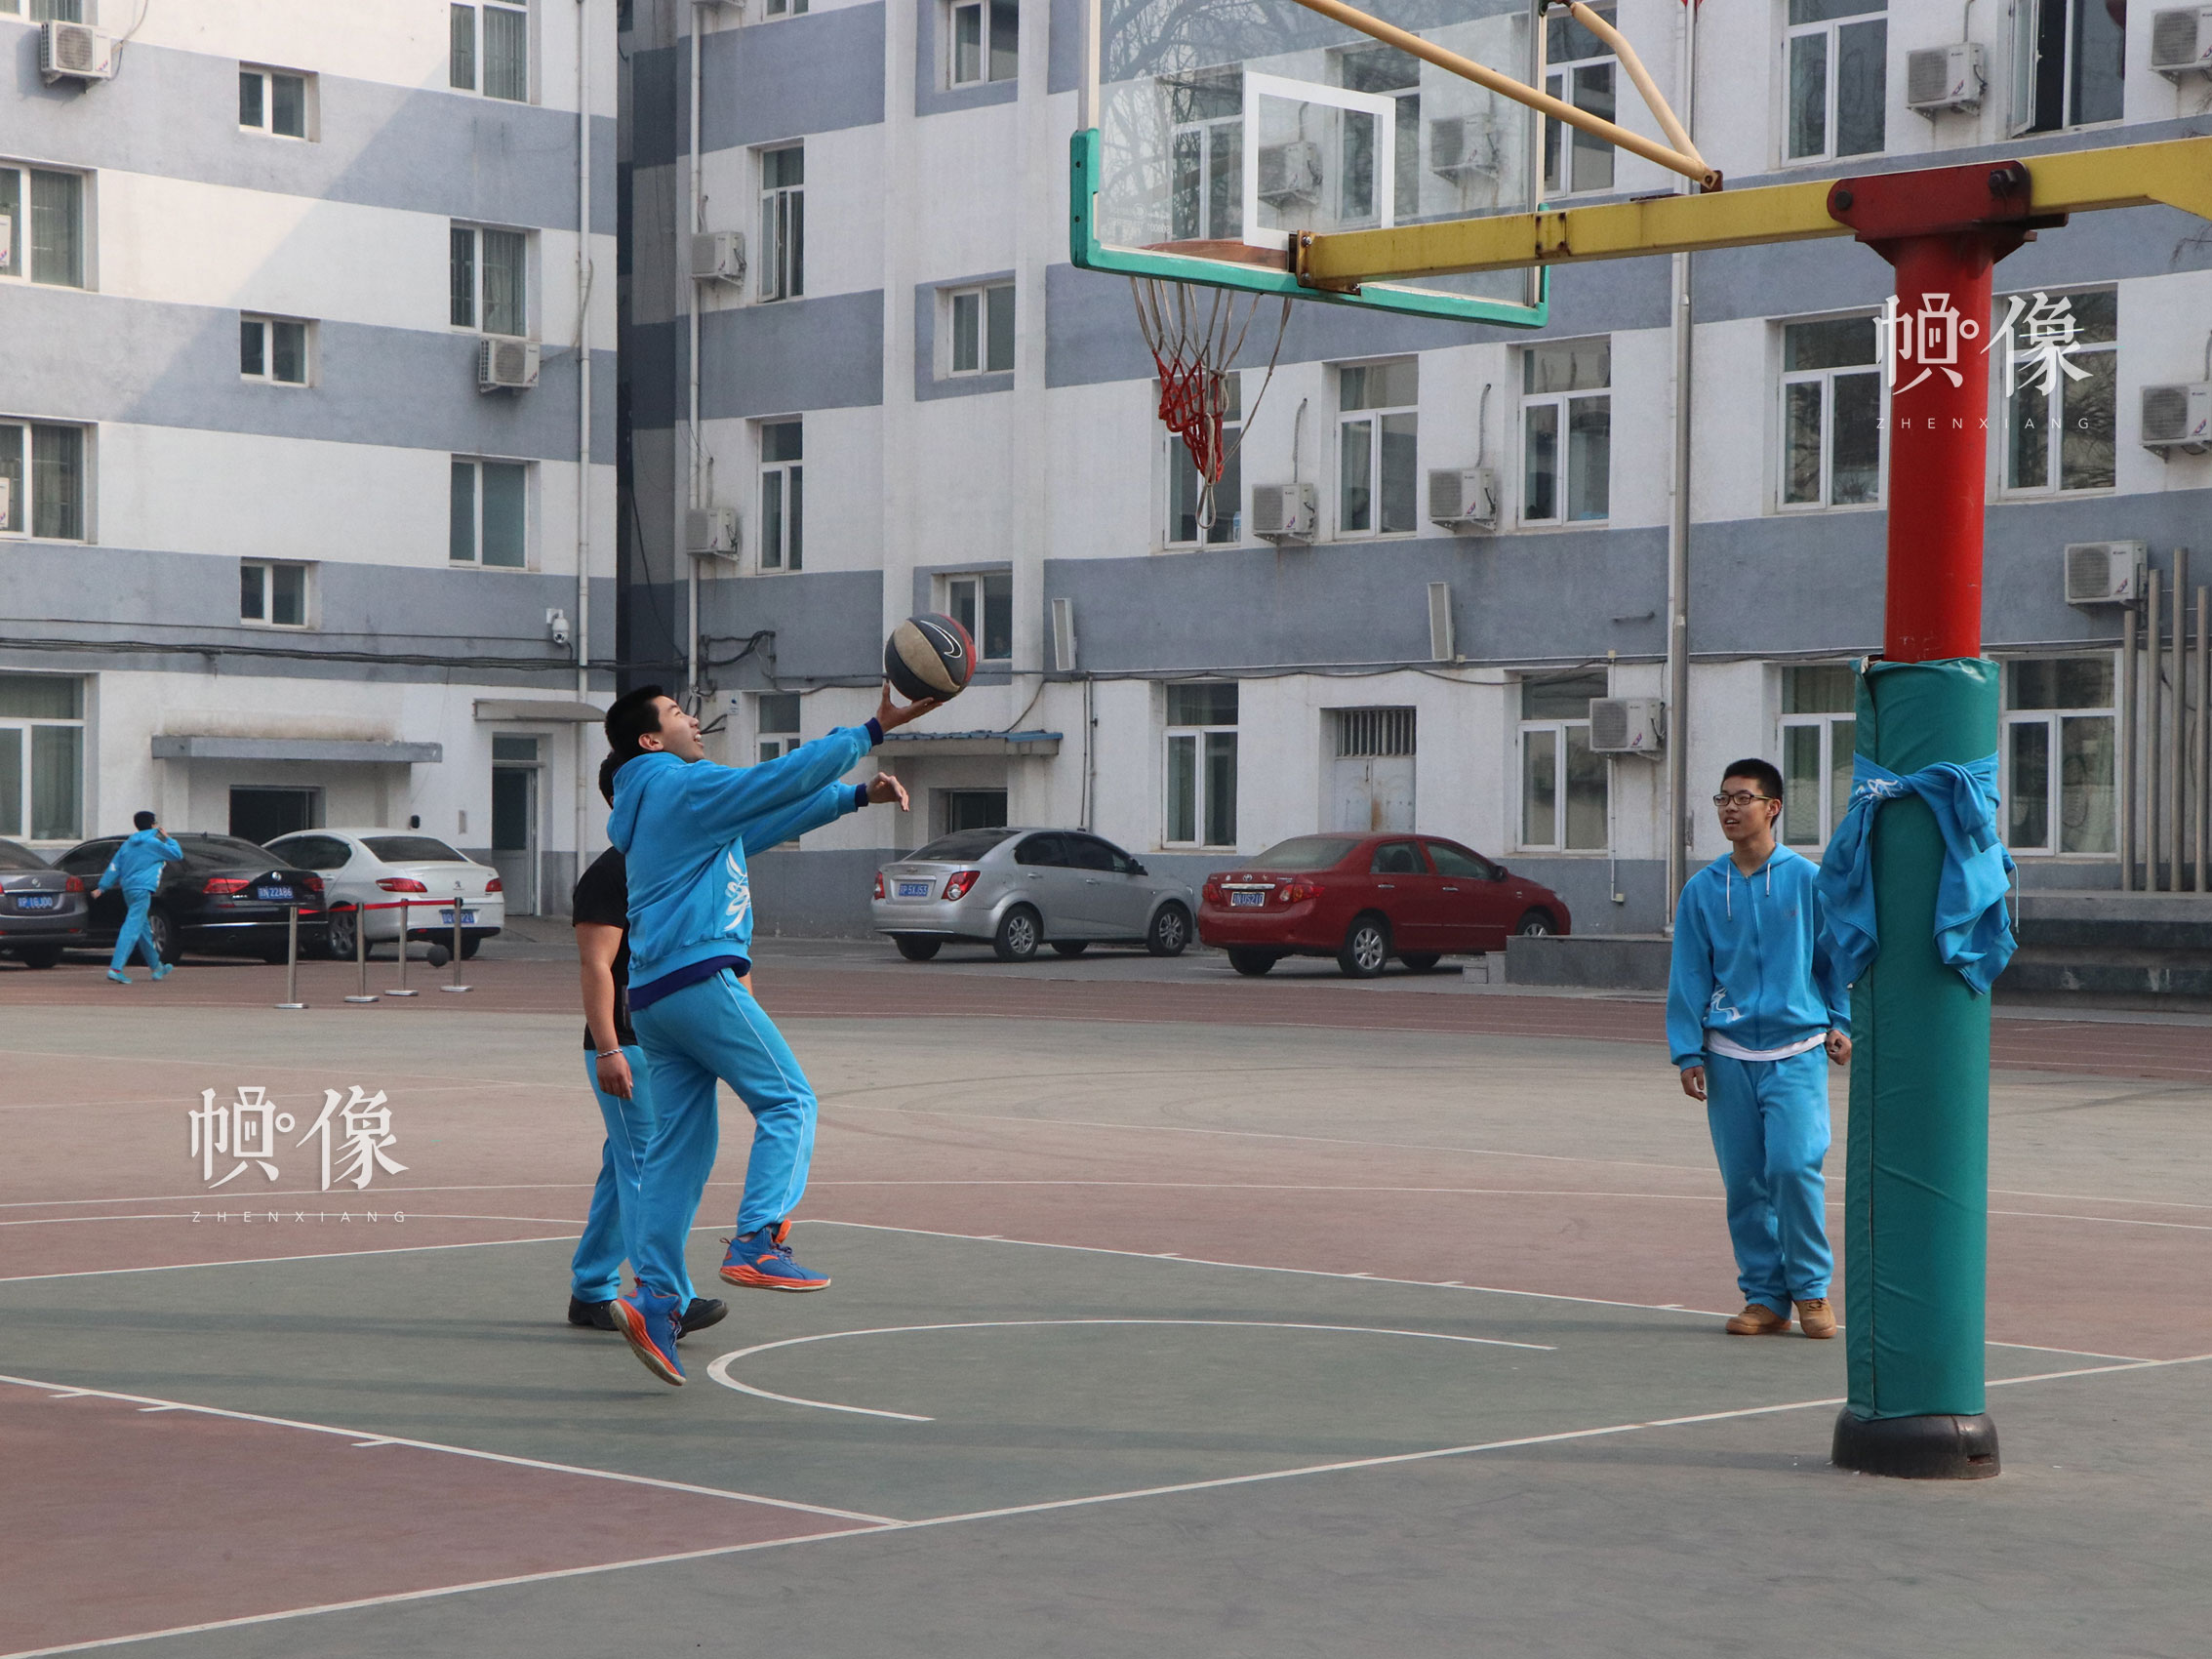 北京市石景山區某中學，課間在操場打籃球的學生們。中國網實習記者 韓依 攝